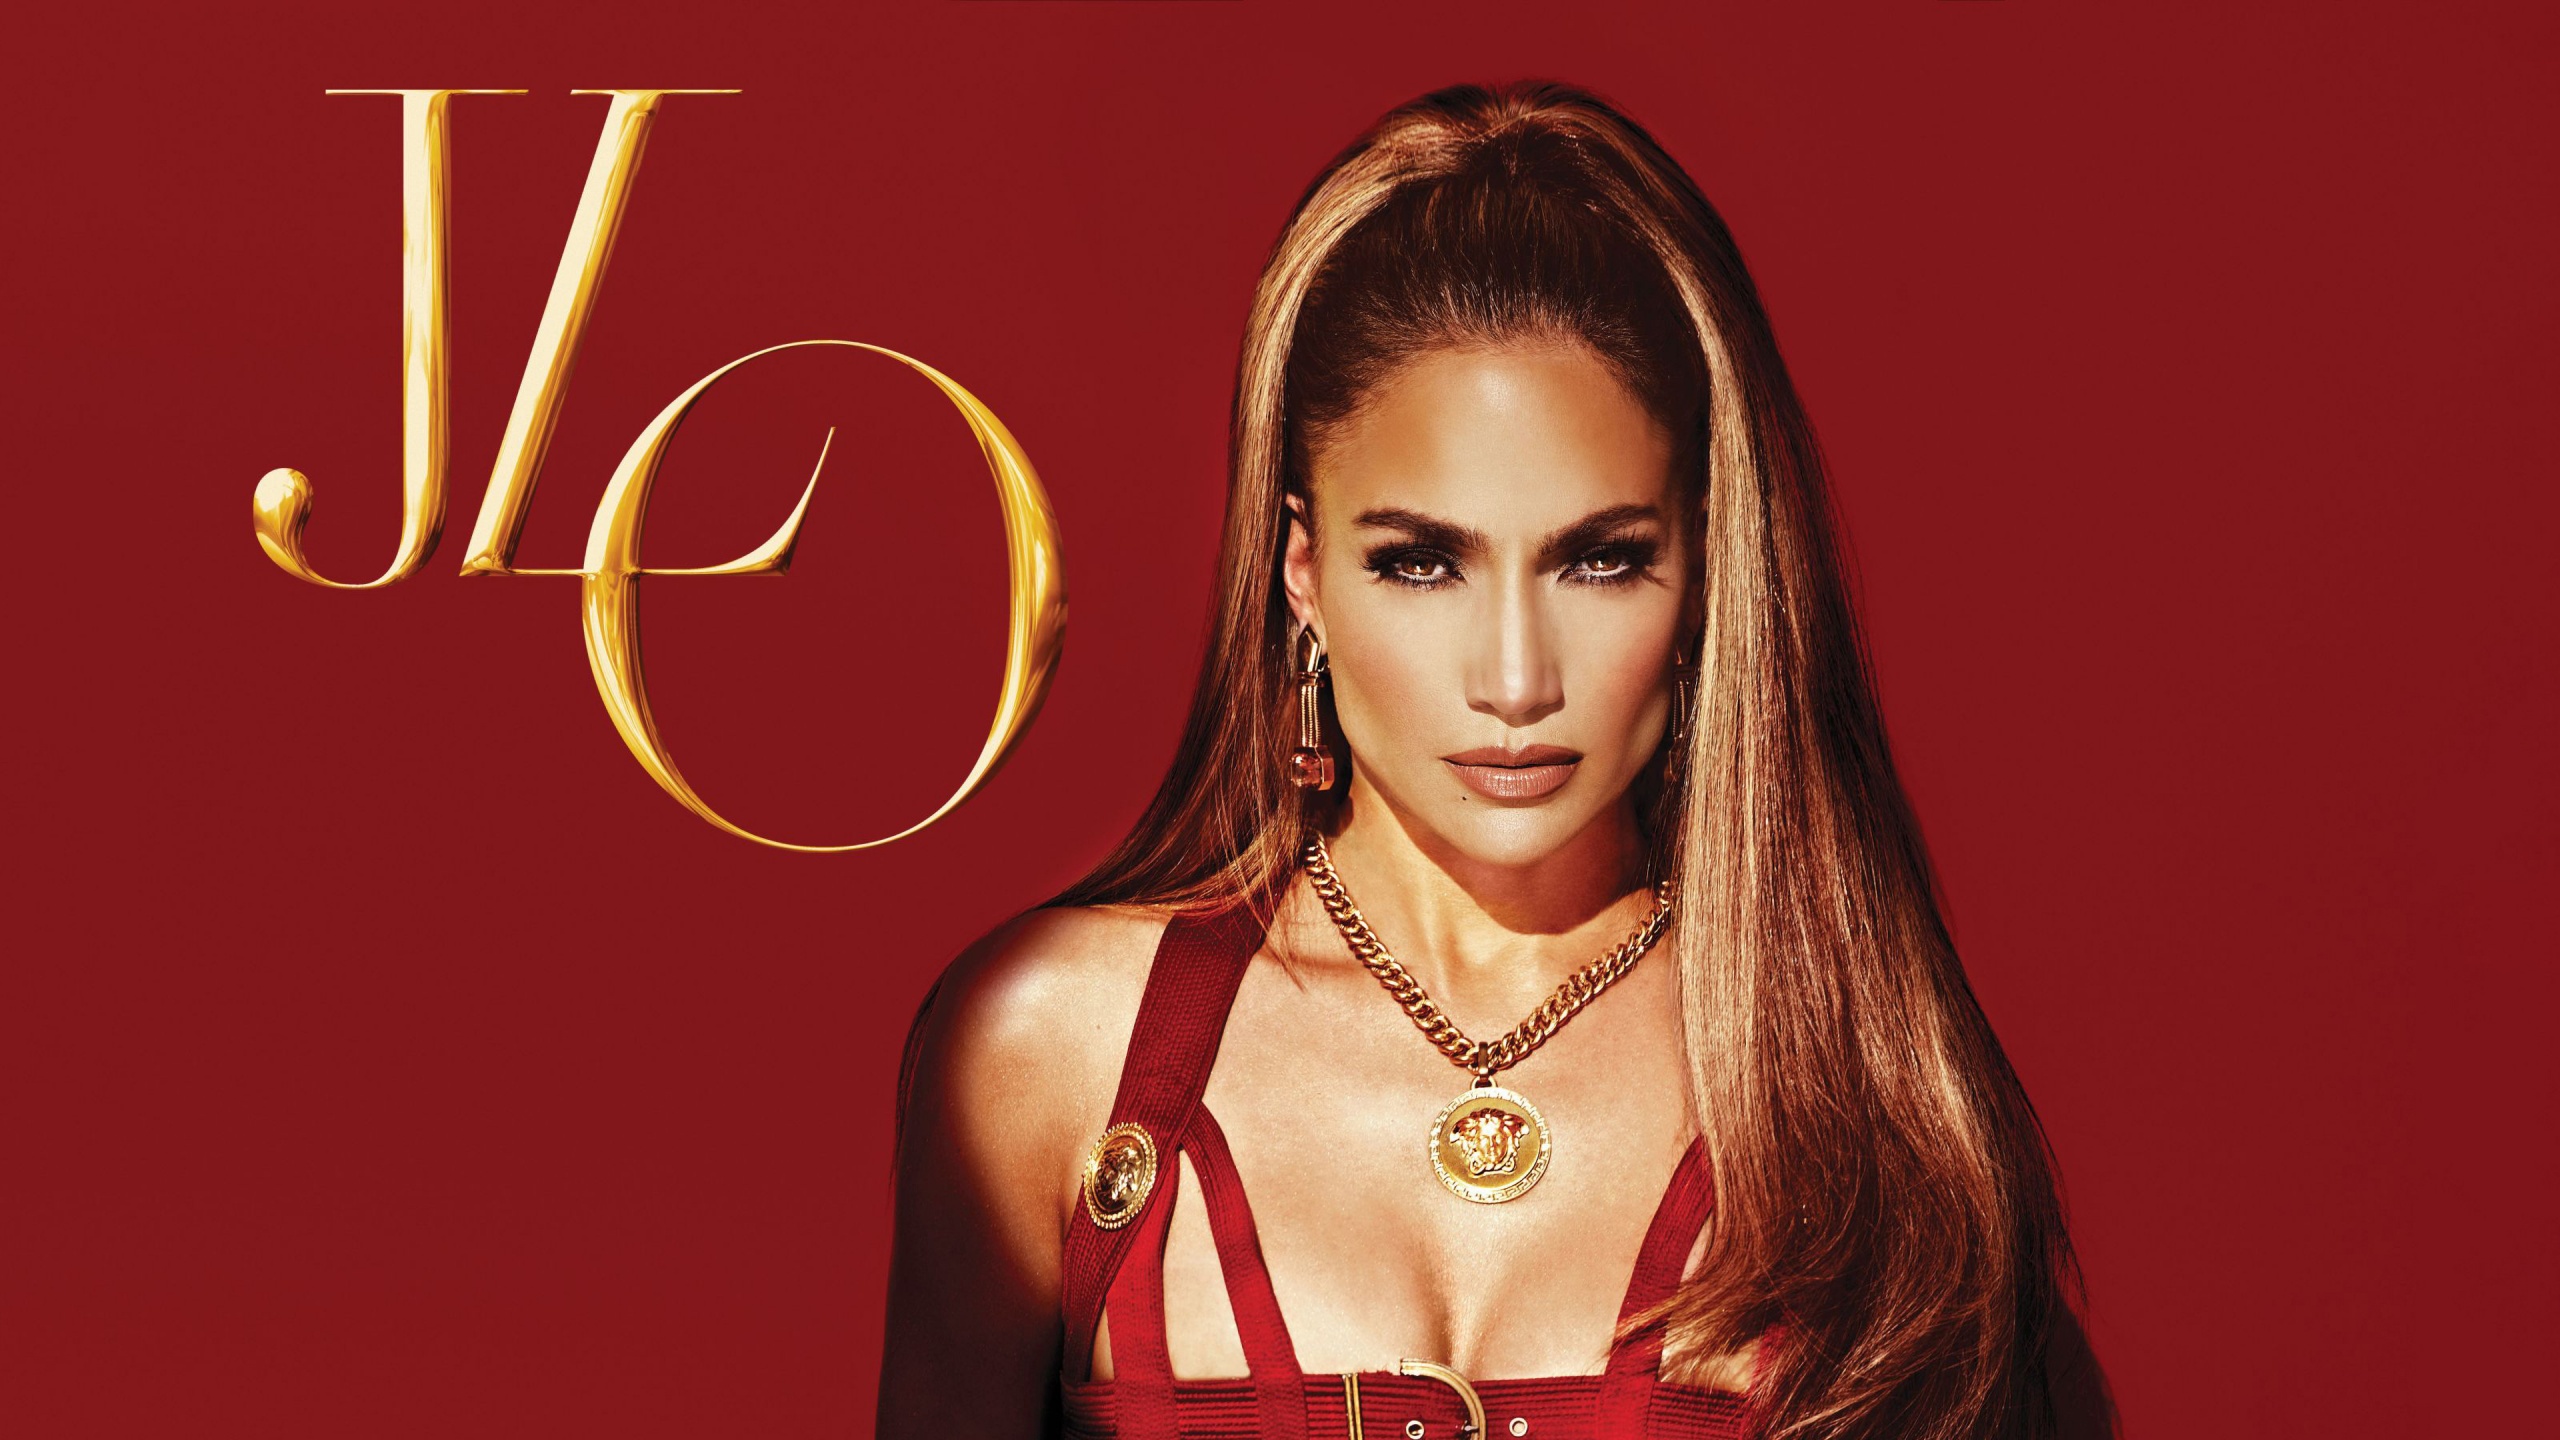 Jennifer Lopez Wallpaper 4K, JLO, American singer